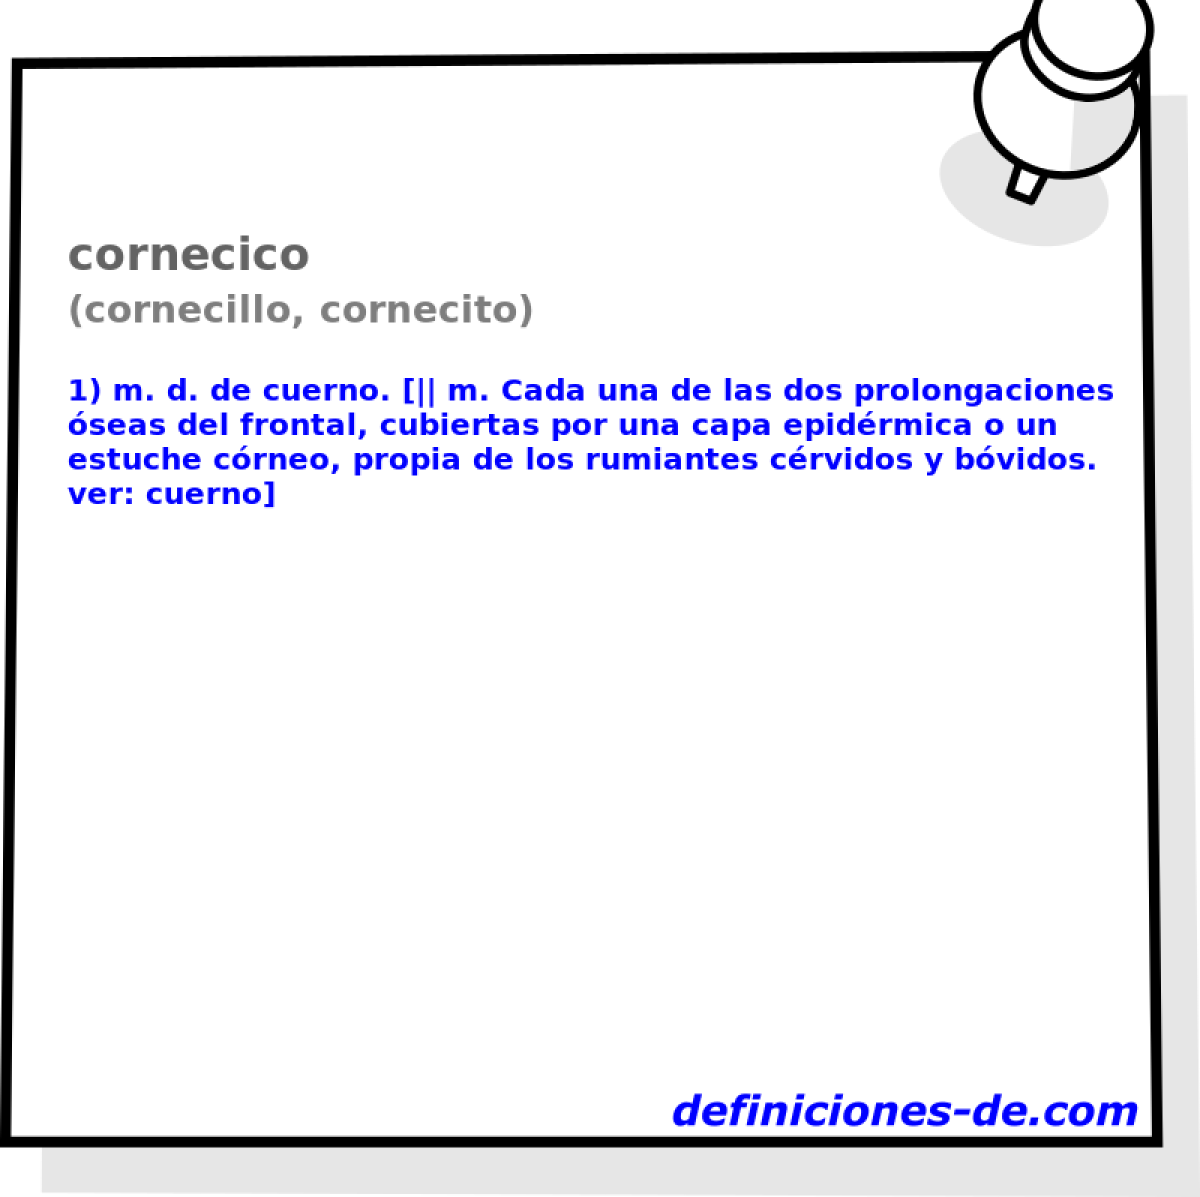 cornecico (cornecillo, cornecito)